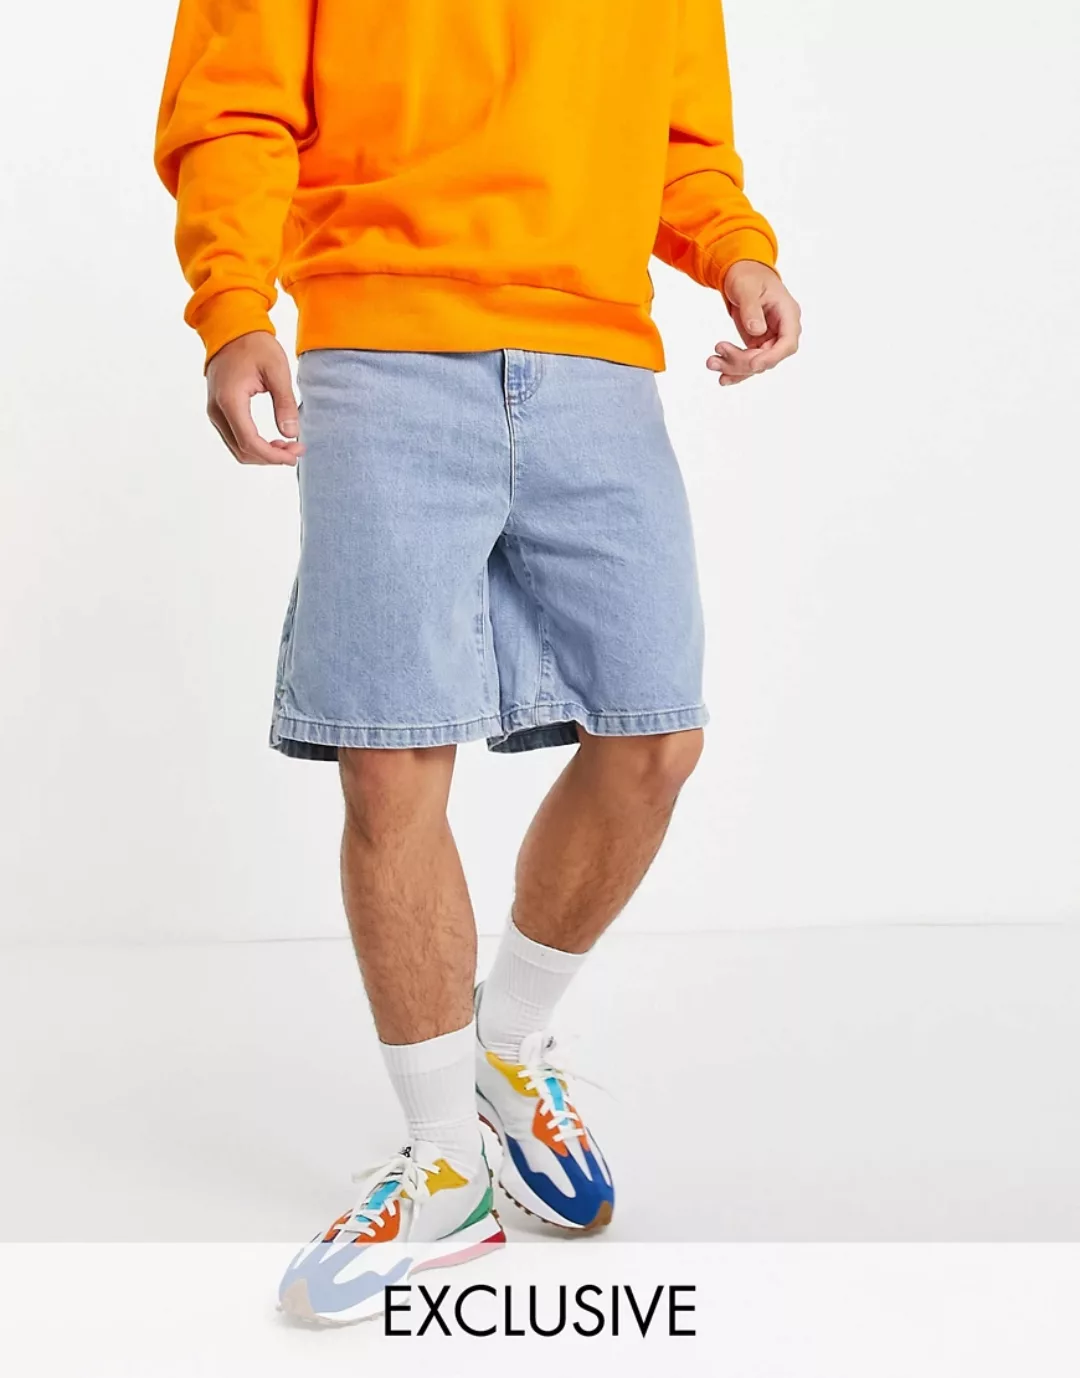 COLLUSION ‑ Extrem weite Shorts in Blau im 90er-Stil günstig online kaufen